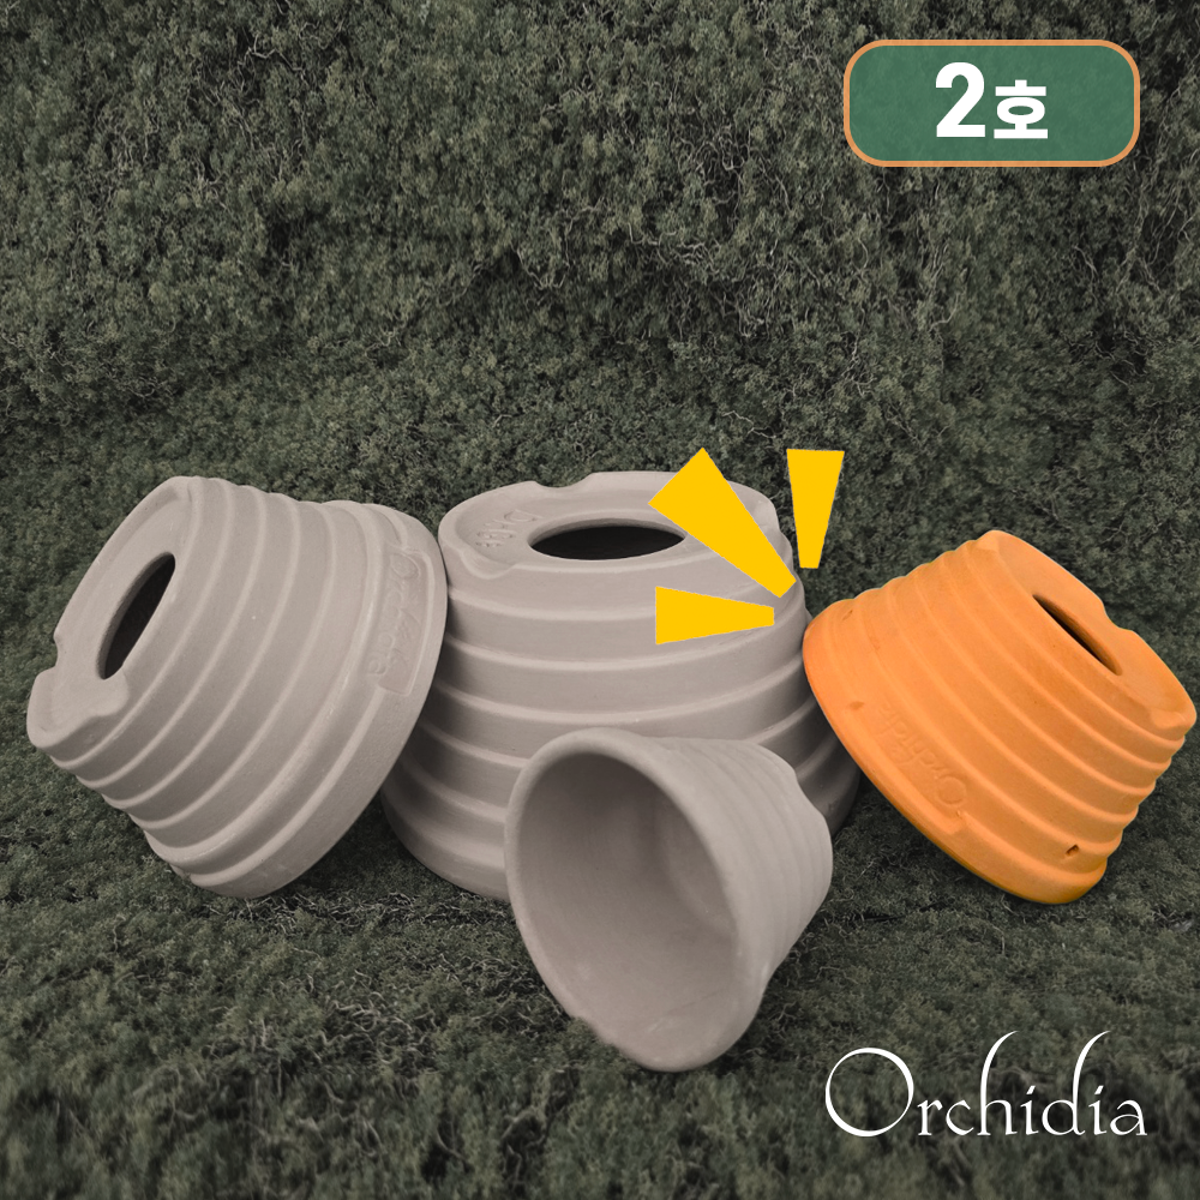 프리미엄 오키디아 2호 토분 Premium Orchidia Pot (size 2 :11.5 x 8 x 6)